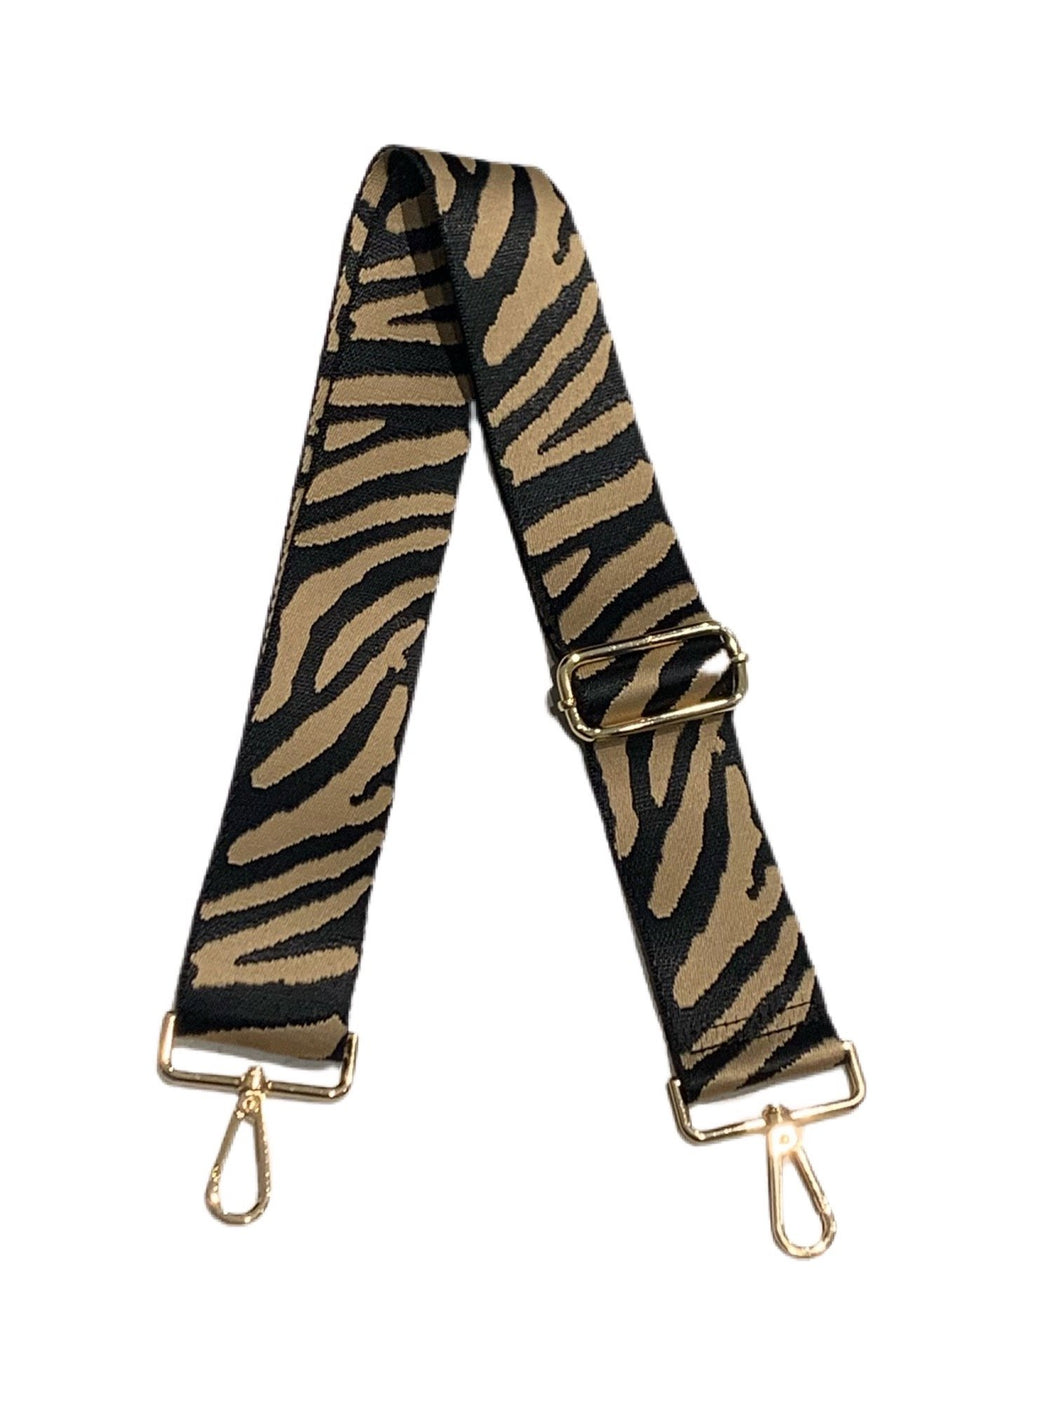 Camel Black Zebra Bag Strap by Ah-dorned